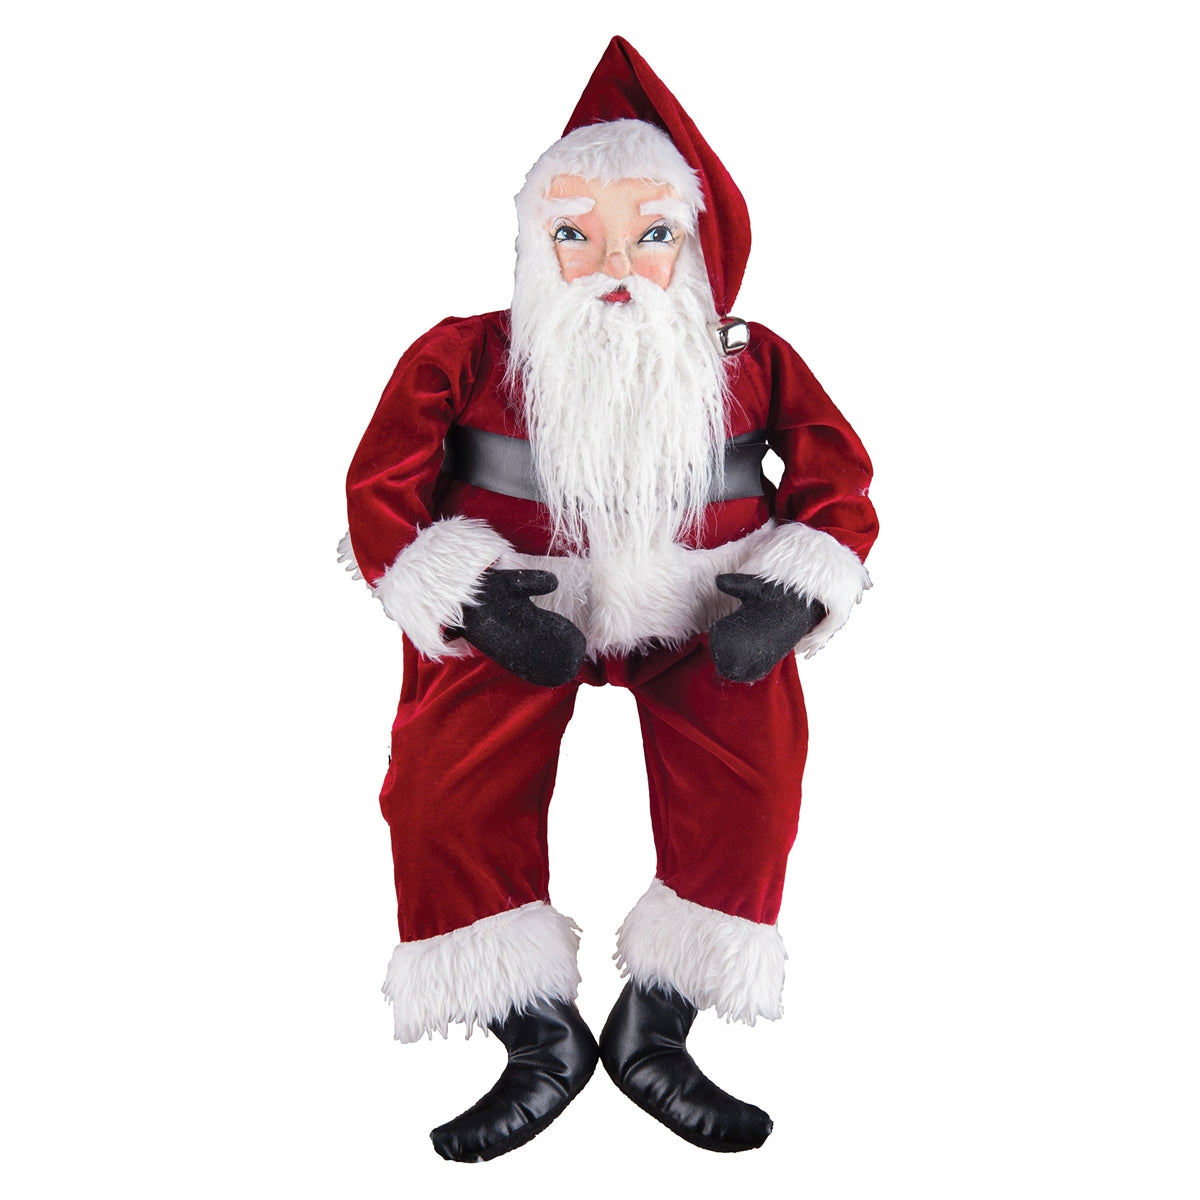 Whittaker Santa Doll - Joe Spencer Christmas